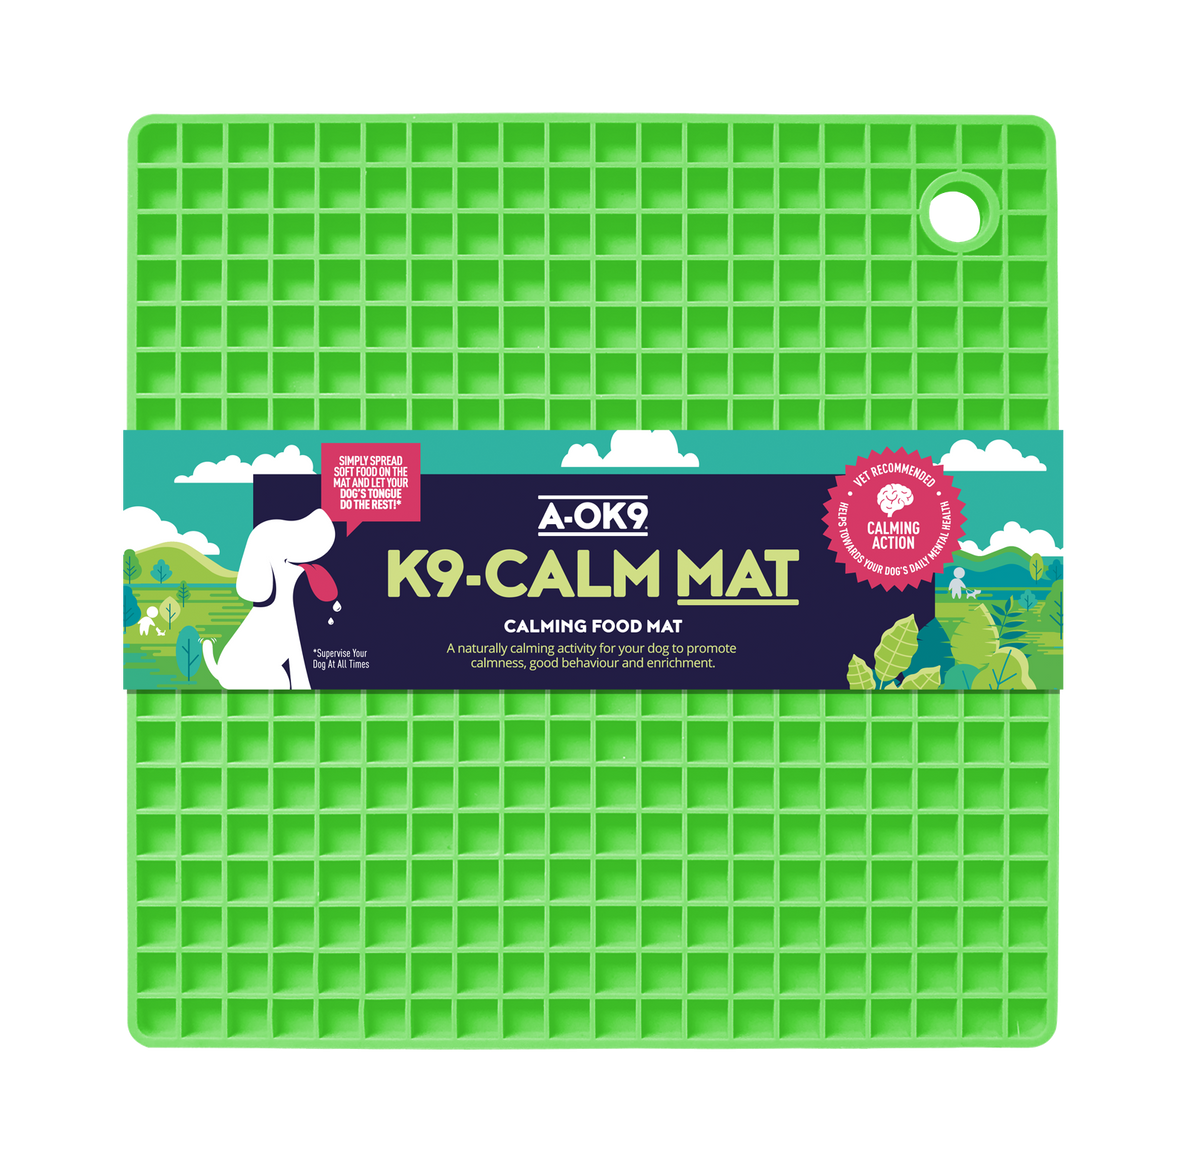 K9-CALM MAT: Lickable Enrichment Mat